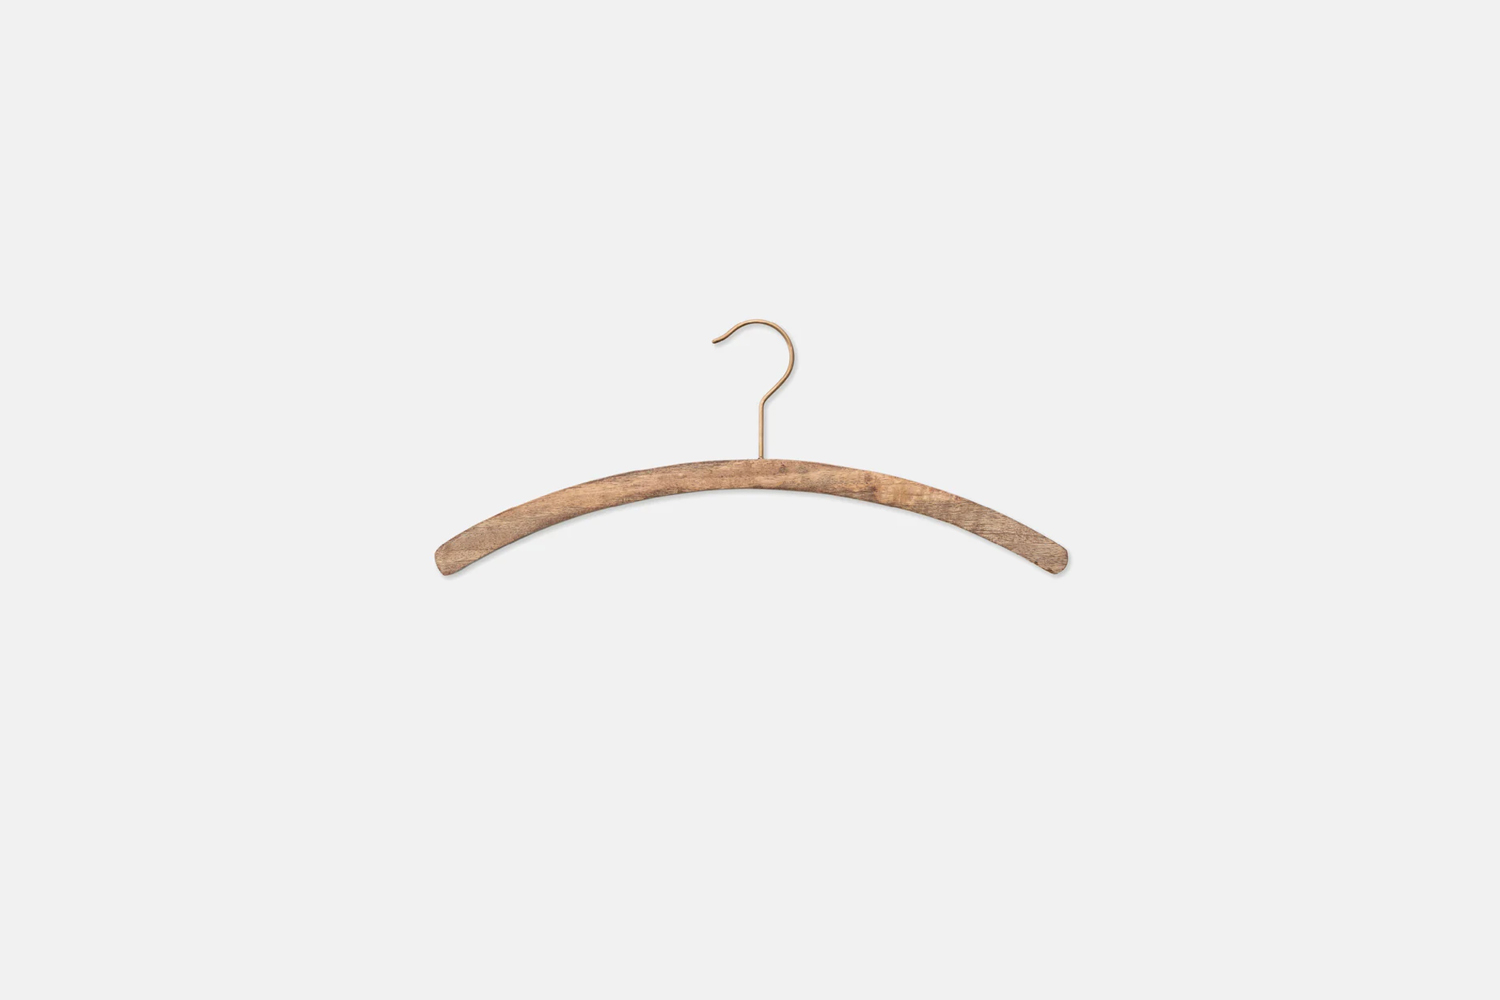 the fog linen mango wood shirt hanger is \$9. 18